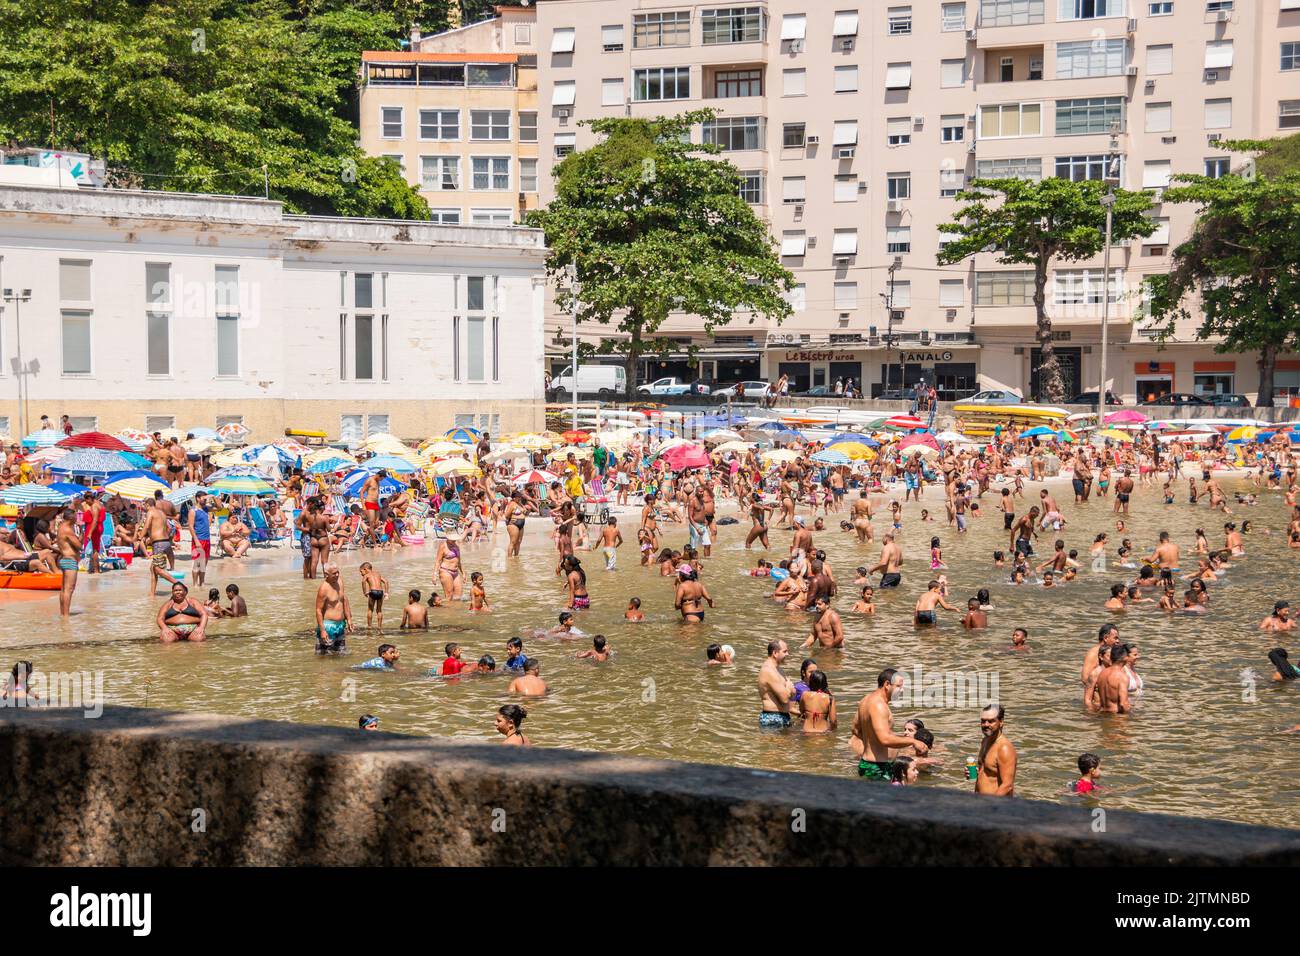 urca-Strand während der Coronavirus-Pandemie in Rio de Janeiro, Brasilien - 6. September 2020: Menschen am urca-Strand während der Coronavirus-Pandemie, e Stockfoto